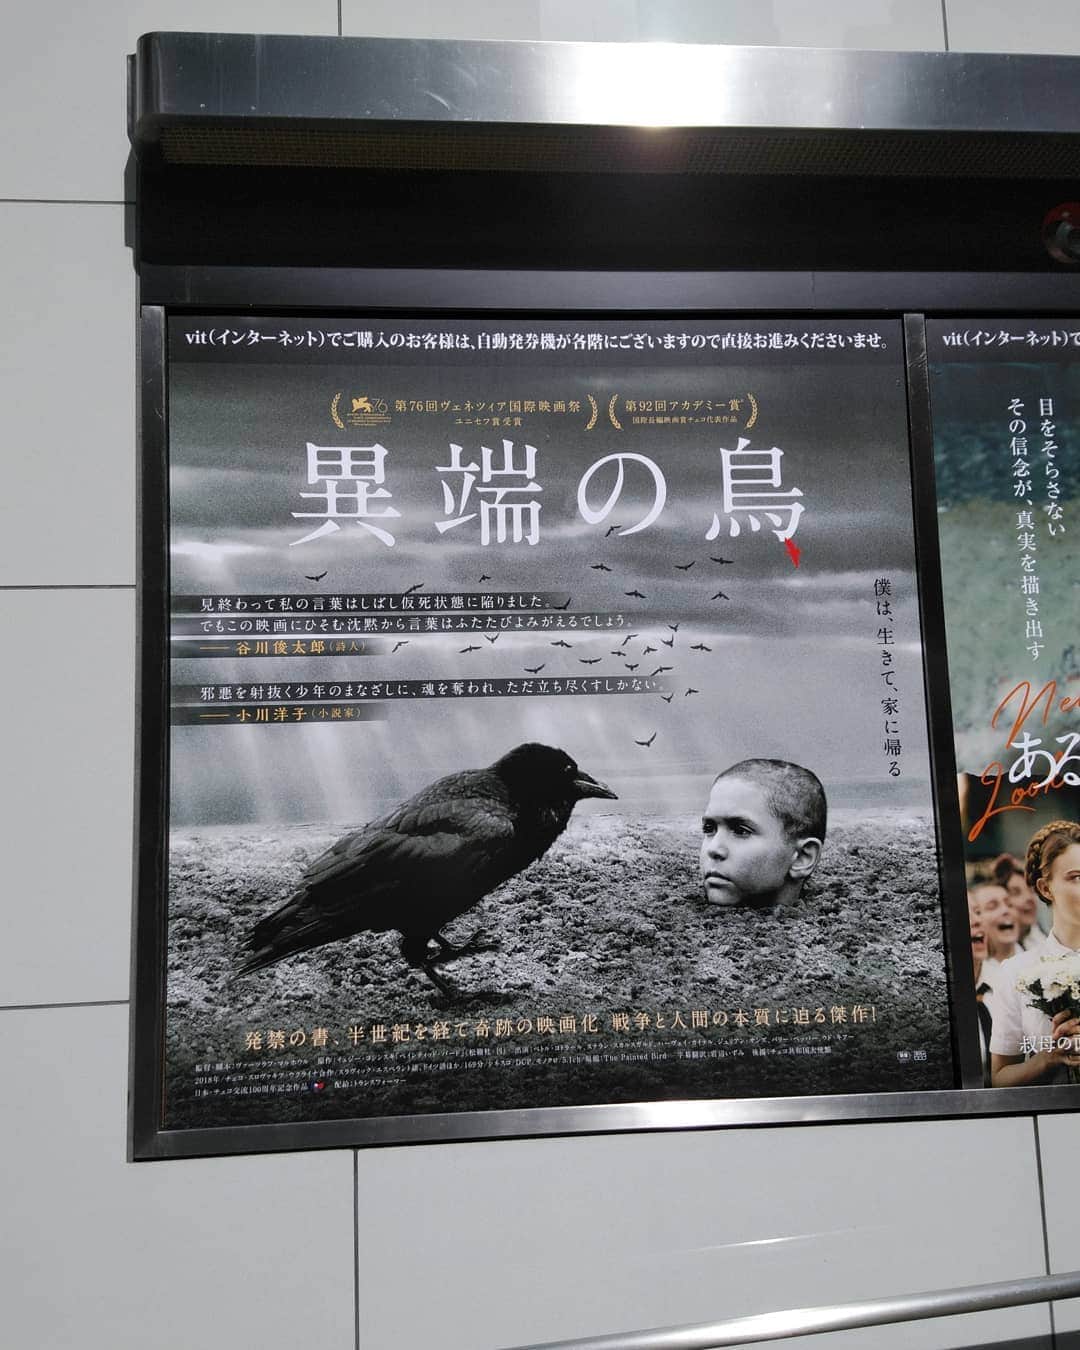 中村松江さんのインスタグラム写真 - (中村松江Instagram)「とてもセンセーショナルな内容というのを聞き、興味津々だった「異端の鳥(原題 Nabarvené ptáče / The Painted Bird)」を鑑賞。 2019年制作、チェコ・スロヴァキア・ウクライナ合作の映画です。 ポーランドの作家イェジー・コシンスキが1965年に発表した同名小説の映画化です。 “僕は、生きて、家に帰る”というのがこの映画のポスターに書いてあるコピーですが、正にそういう内容の作品です。 物凄く綺麗事に内容を説明すると、第二次世界大戦下のヨーロッパを舞台に、ユダヤ人の少年が戦火の中ホロコーストから逃れながら、彼に降りかかる多くの苦難(本当に悲惨過ぎる出来事)を乗り越え、様々な人々(殆どが狂気じみた人達)との出会いと別れを通じて、子どもから大人へ成長していくお話となります。 モノクロの映像が美しくも、余りにも人に優しくない中味が心に刺さる映画でした。 以下なるべく具体的な事は書きませんが、ちょっとネタばれになります。  私は殆ど予備知識無くこの作品を観たので、どこの国が制作したのかも知らずタイトルが英語表記だなと思ったら、何語か判別出来ない言葉が聞こえてきました😲 これ何と映画の舞台となる国や場所を特定されないよう、インタースラーヴィクという人工言語が使われていて、この言語が映画で使用されるのは史上初めてだそうです。 勿論映画に出てくるドイツ軍、ソ連軍はそれぞれドイツ語とロシア語で話しています。 まず映画の始まり、モノクロ画像で自然豊かな田舎の風景というのは見てとれますが、これがどこの国でいつの時代かもわかりませんでした。 しかし話が進むにつれ、どうやら第二次世界大戦中、主人公の少年はユダヤ人でドイツのホロコーストの恐怖の下にあることがわかってきます。 ホロコーストから逃れるために両親と別れ、田舎の親戚の家に疎開した少年が、彼の世話をしていたお婆さんが突然死して身寄りが無くなり、仕方なく一人で苛酷な状況をサバイバルしなければならなくなるのです。 構成は主人公が行く先々で出会う人々の名前がついた全9章からなっています。 とにかくありとあらゆるジャンルの虐待描写のオンパレードで、戦争やホロコーストも含めて、人間という生き物の、恐ろしさ、不条理さ、残酷さ、醜さ、愚かさ等のネガティブな面が少年の目を通して、これでもかと言わんばかりに観客の前に提示されます。(まあ少しは人間の善意も描かれていますが😅) 感触としては1979年、フォルカー・シュレンドルフ監督の「ブリキの太鼓」に近いと感じました。 主役の少年を立派に勤めたのはペトル・コトラール✨ 主人公の人生に関わってくる人々を演じるのは、ステラン・スカルスガルド、ハーヴェイ・カイテル、ジュリアン・サンズ、バリー・ペッパー、ウド・キアー等の国際的に活躍する豪華なベテラン俳優達です。 製作、監督、脚本のチェコのヴァーツラフ・マルホウルは169分の長尺を退屈させませんでした。 この映画のタイトルの由来である鳥のエピソードも鋭く印象に残ります。 人間の本質というか、正体というか、誰しもが抱えているネガティブな側面、醜悪さを忘れずに自覚するためには必要な作品かもしれません。 とは言え長いし不快な内容なので安易に人に薦められない映画ですね。 ちなみに第76回ヴェネツィア国際映画祭ユニセフ賞受賞しています。 #歌舞伎 #中村松江 #異端の鳥 #thepaintedbird #nabarvenéptáče  #václavmarhoul」10月19日 8時12分 - matsue_nakamuraofficial